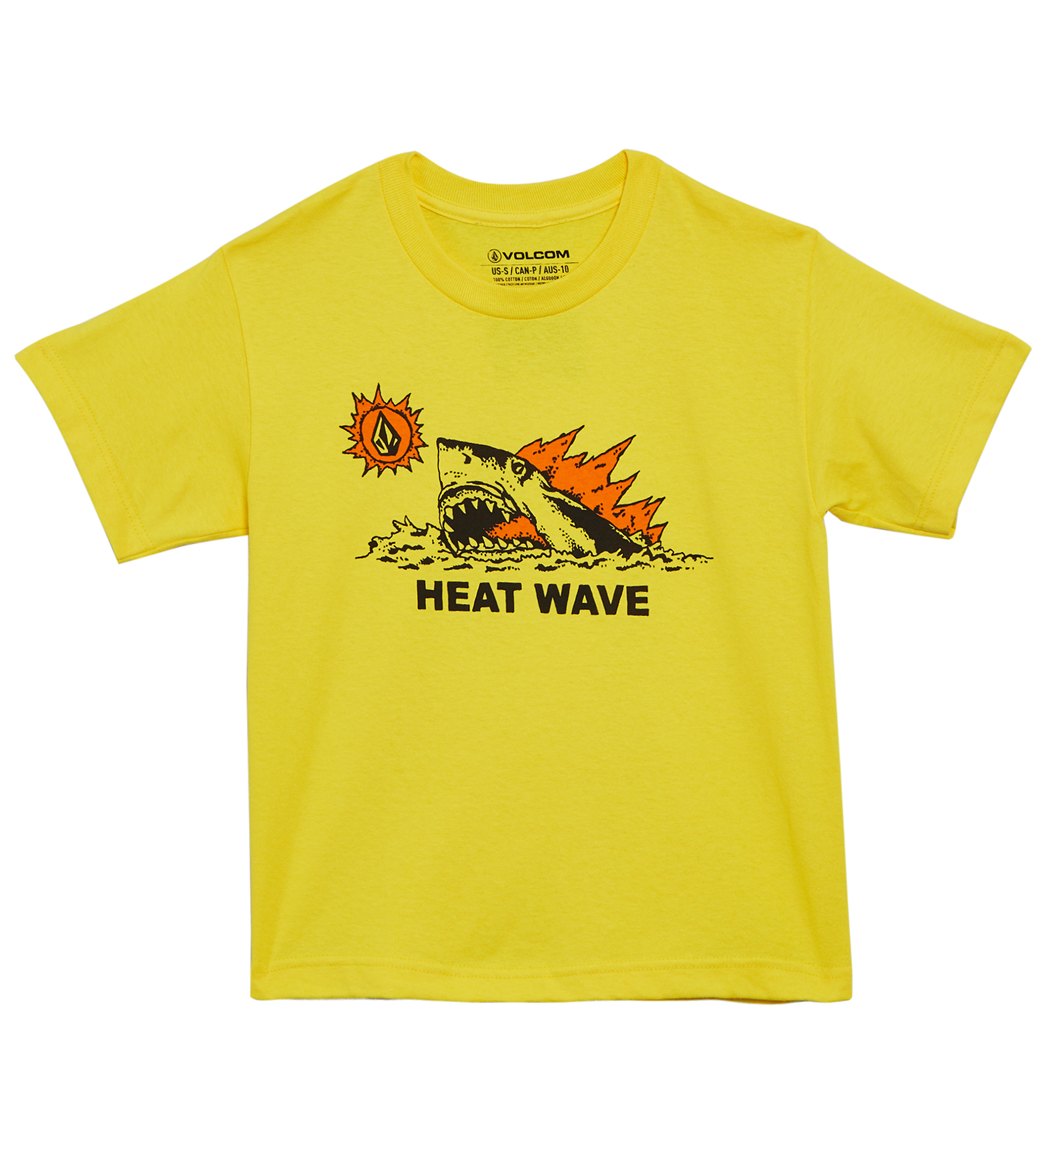 Volcom Boys' Hot Shark Tee Shirt Toddler - True Yellow 2T Cotton - Swimoutlet.com